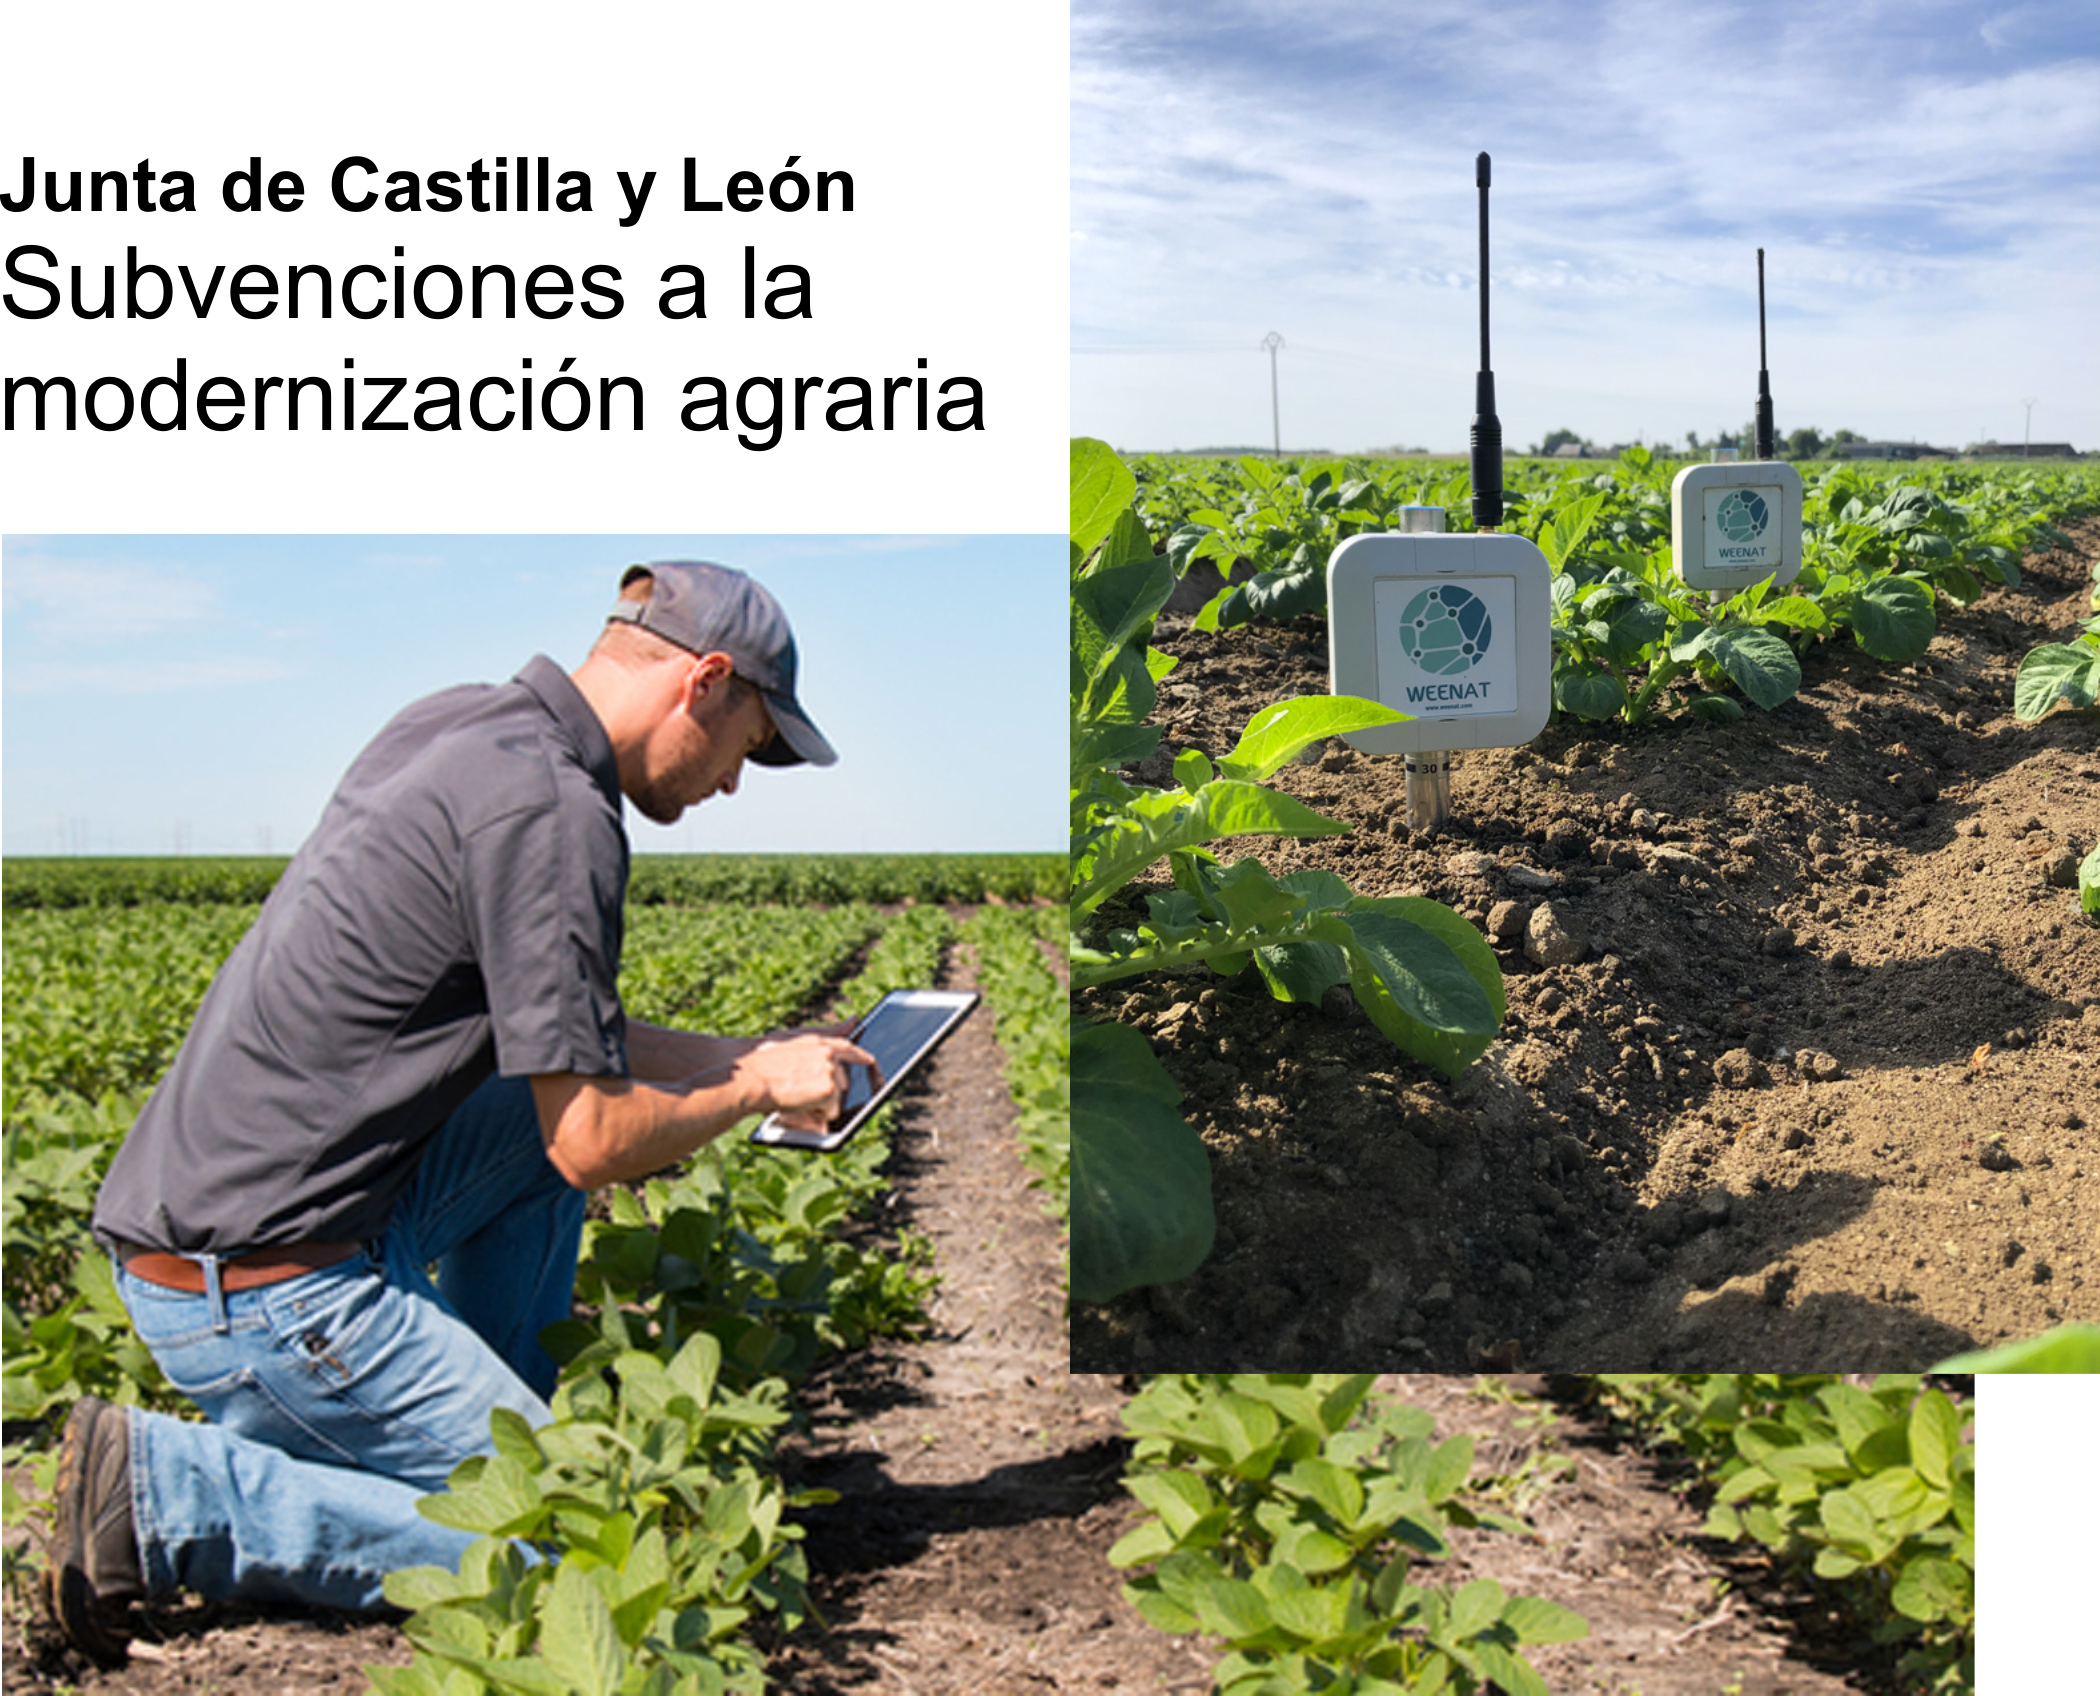 Los Sensores Agrícolas son subvencionados como parte de la modernización agraria.